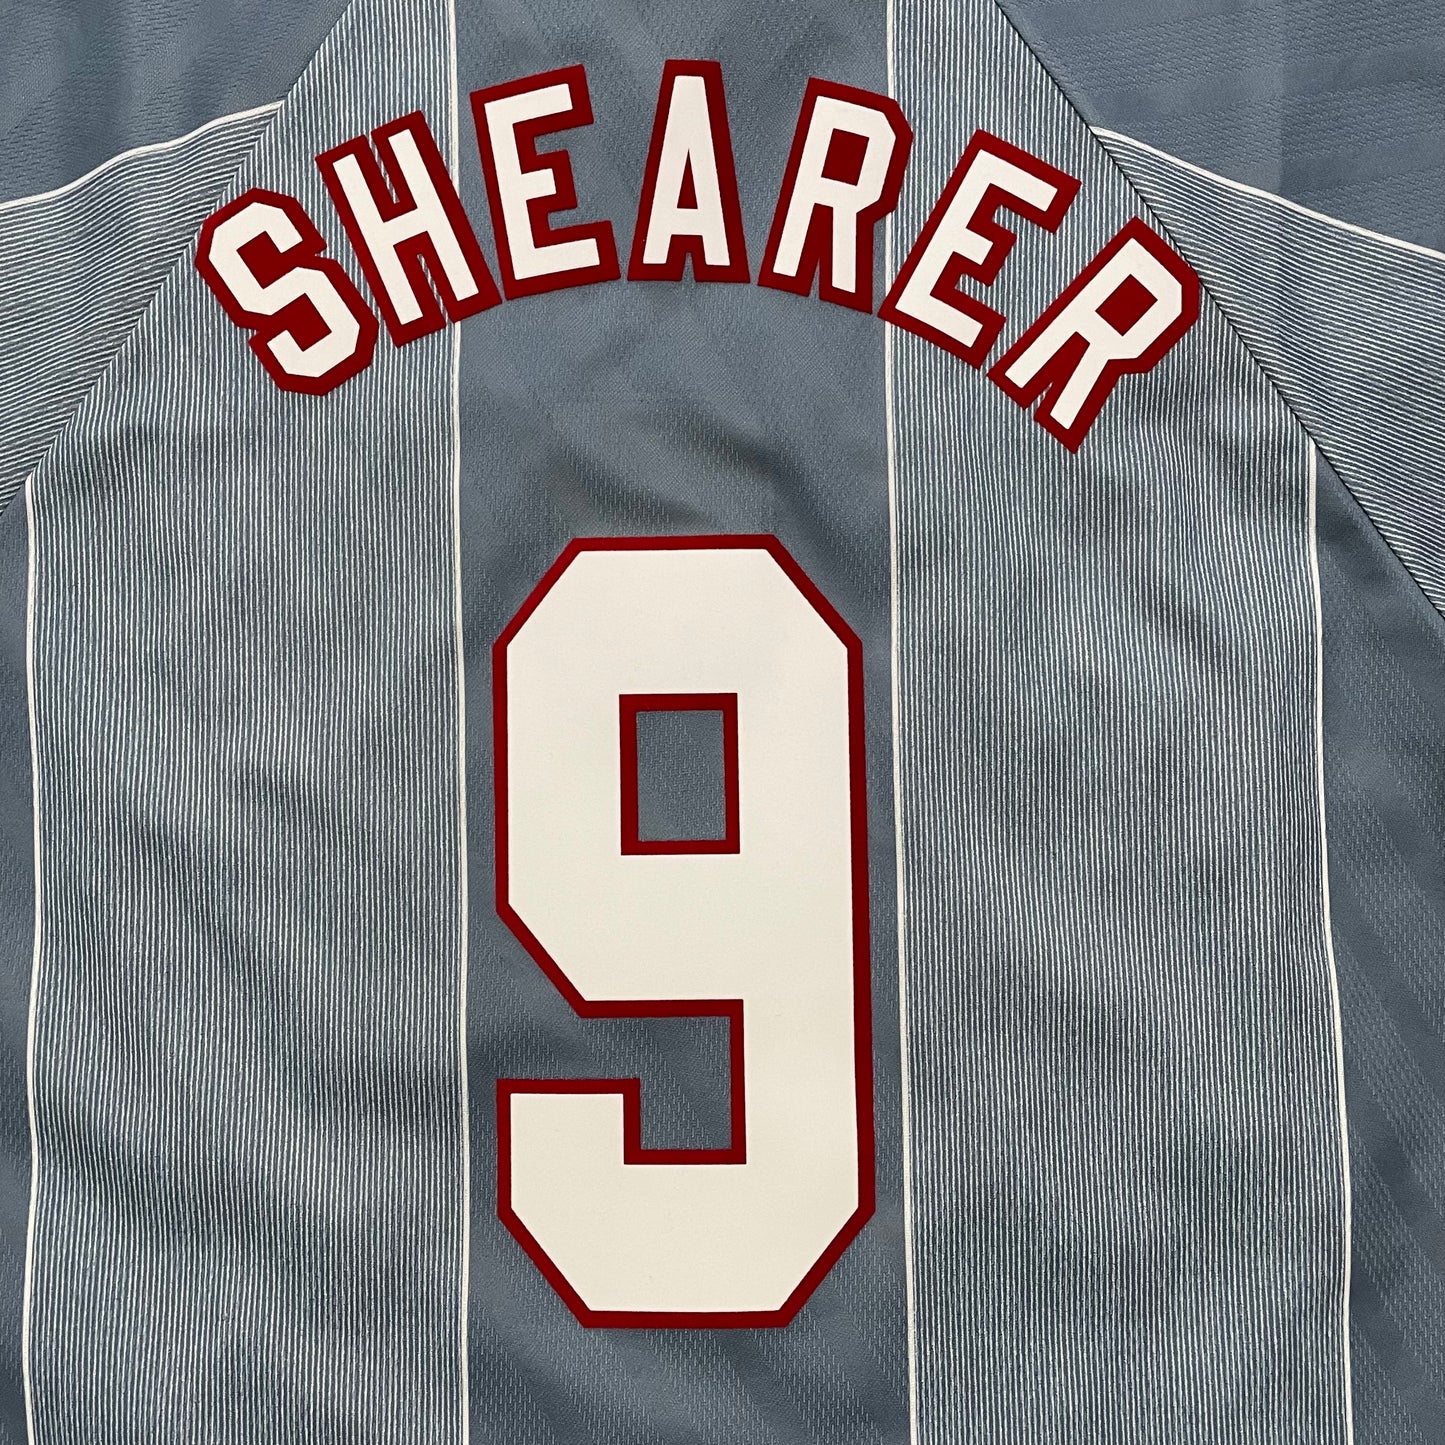 1996 Euro England away shirt #9 Shearer (L)